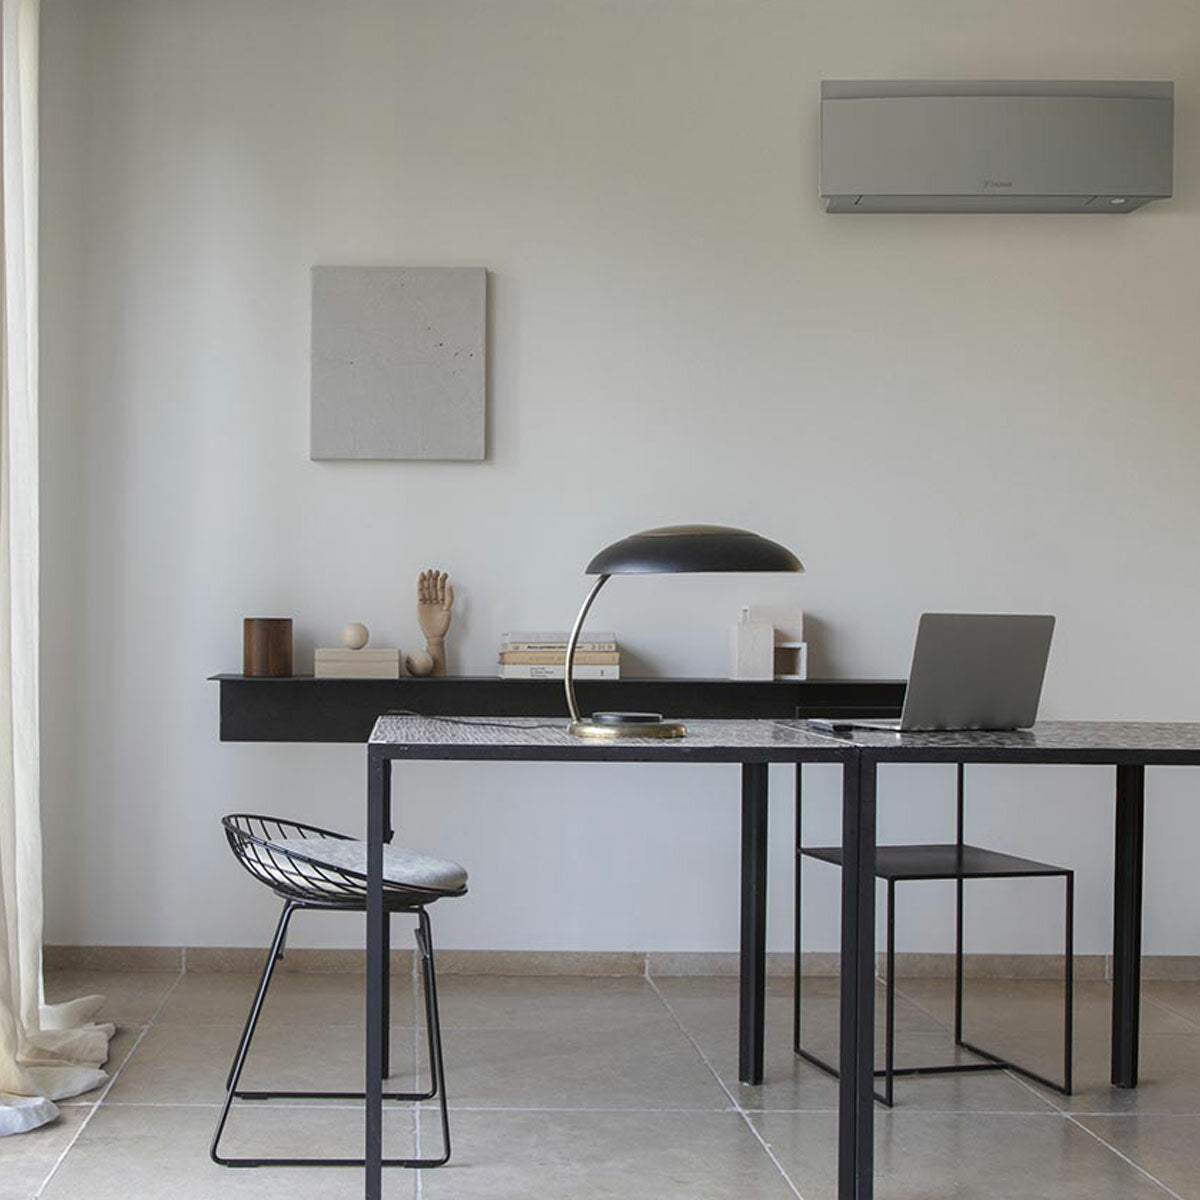 Daikin Emura air conditioner 3 split panels 12000+12000+12000+12000 BTU inverter A++ wifi outdoor unit 7.4 kW Silver